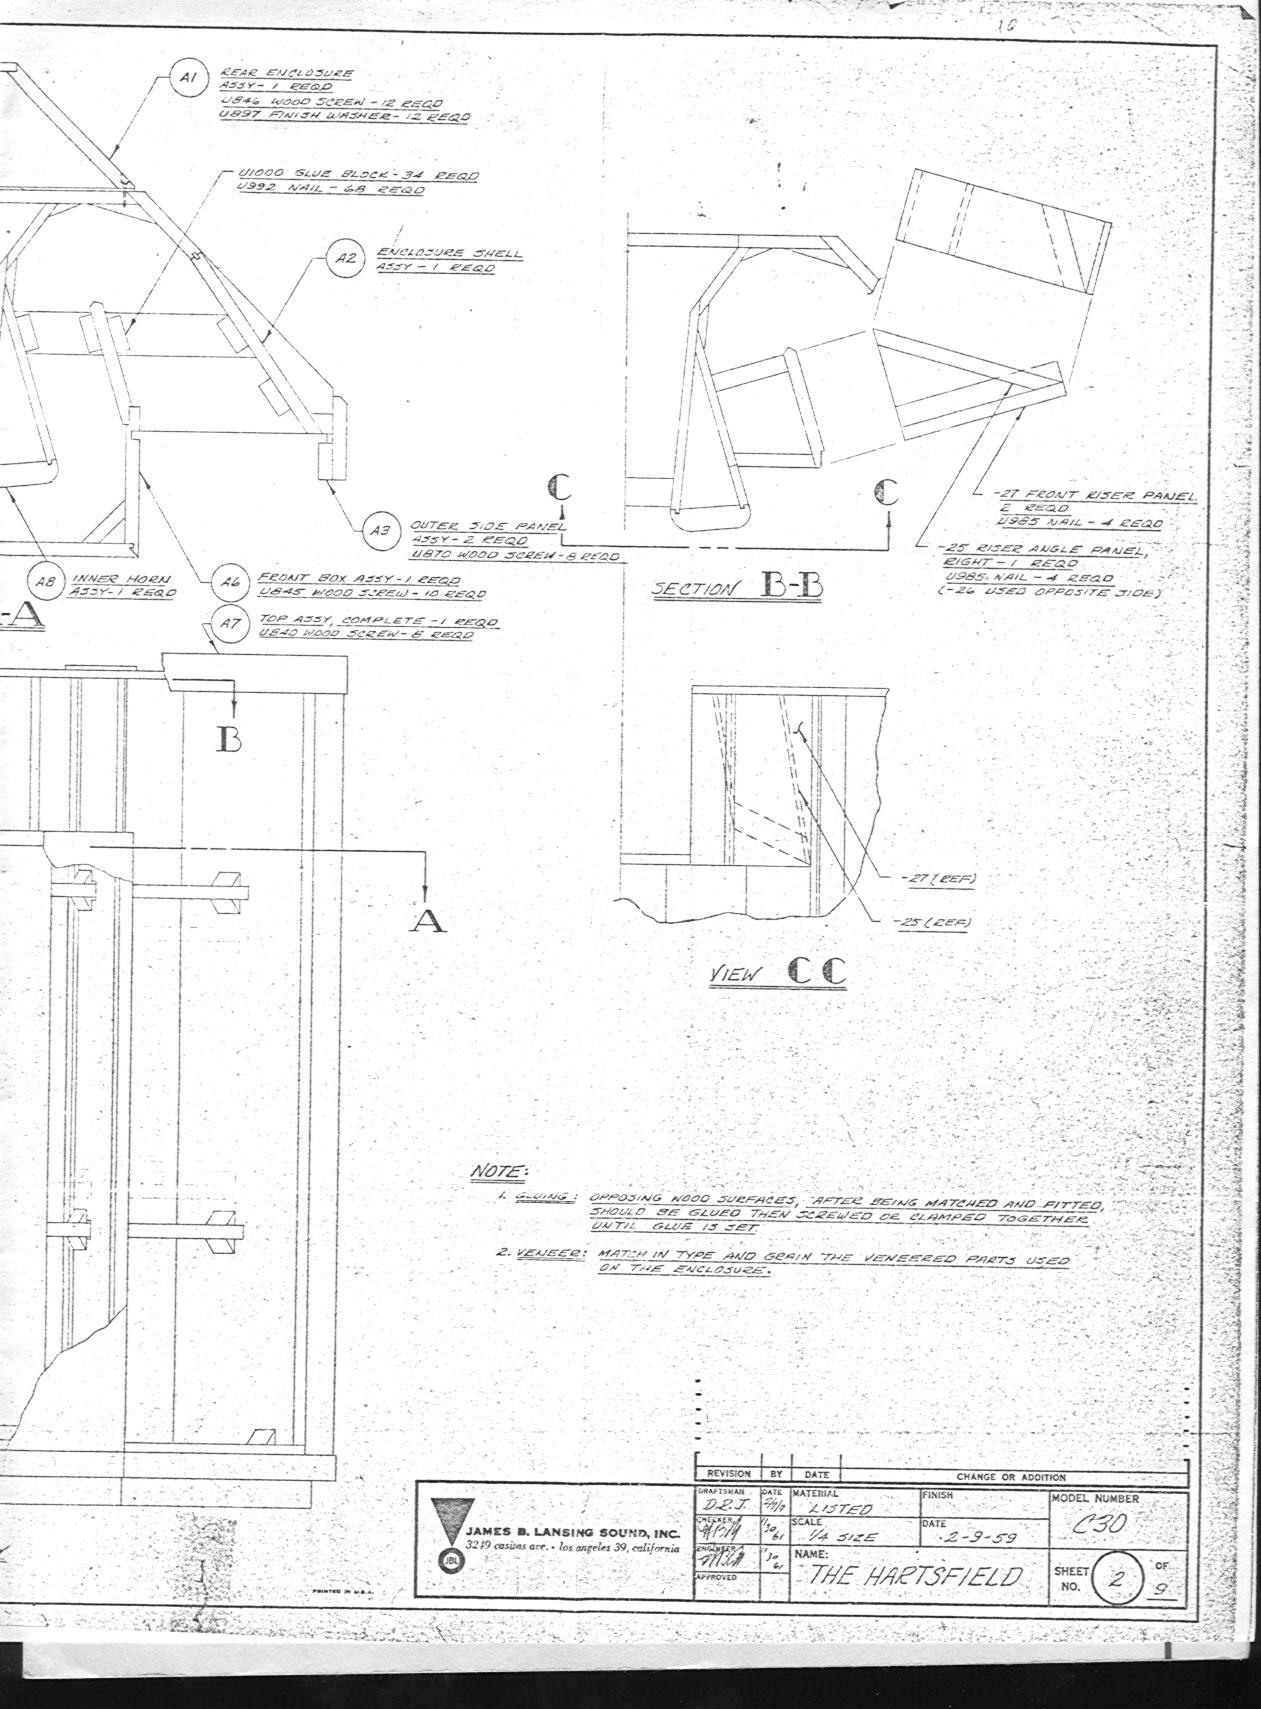 JBL - Hartsfield Cabinet - Drawing 2b